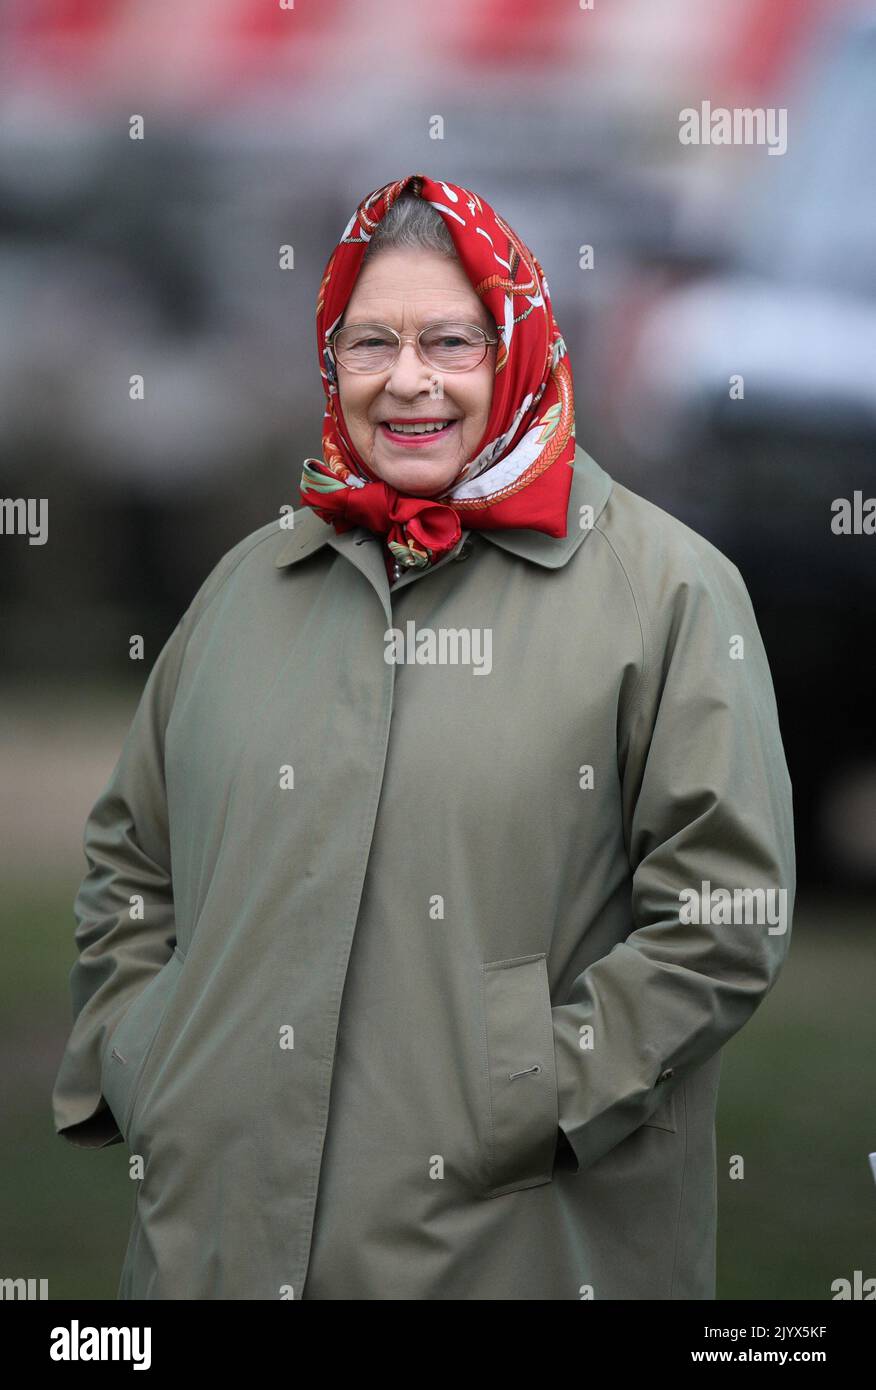 Foto del archivo fechada el 14/05/2010 de la Reina Isabel II en el Royal Windsor Horse show en el Castillo de Windsor. La reina murió pacíficamente en Balmoral esta tarde, ha anunciado el Palacio de Buckingham. Fecha de emisión: Jueves 8 de septiembre de 2022. Foto de stock